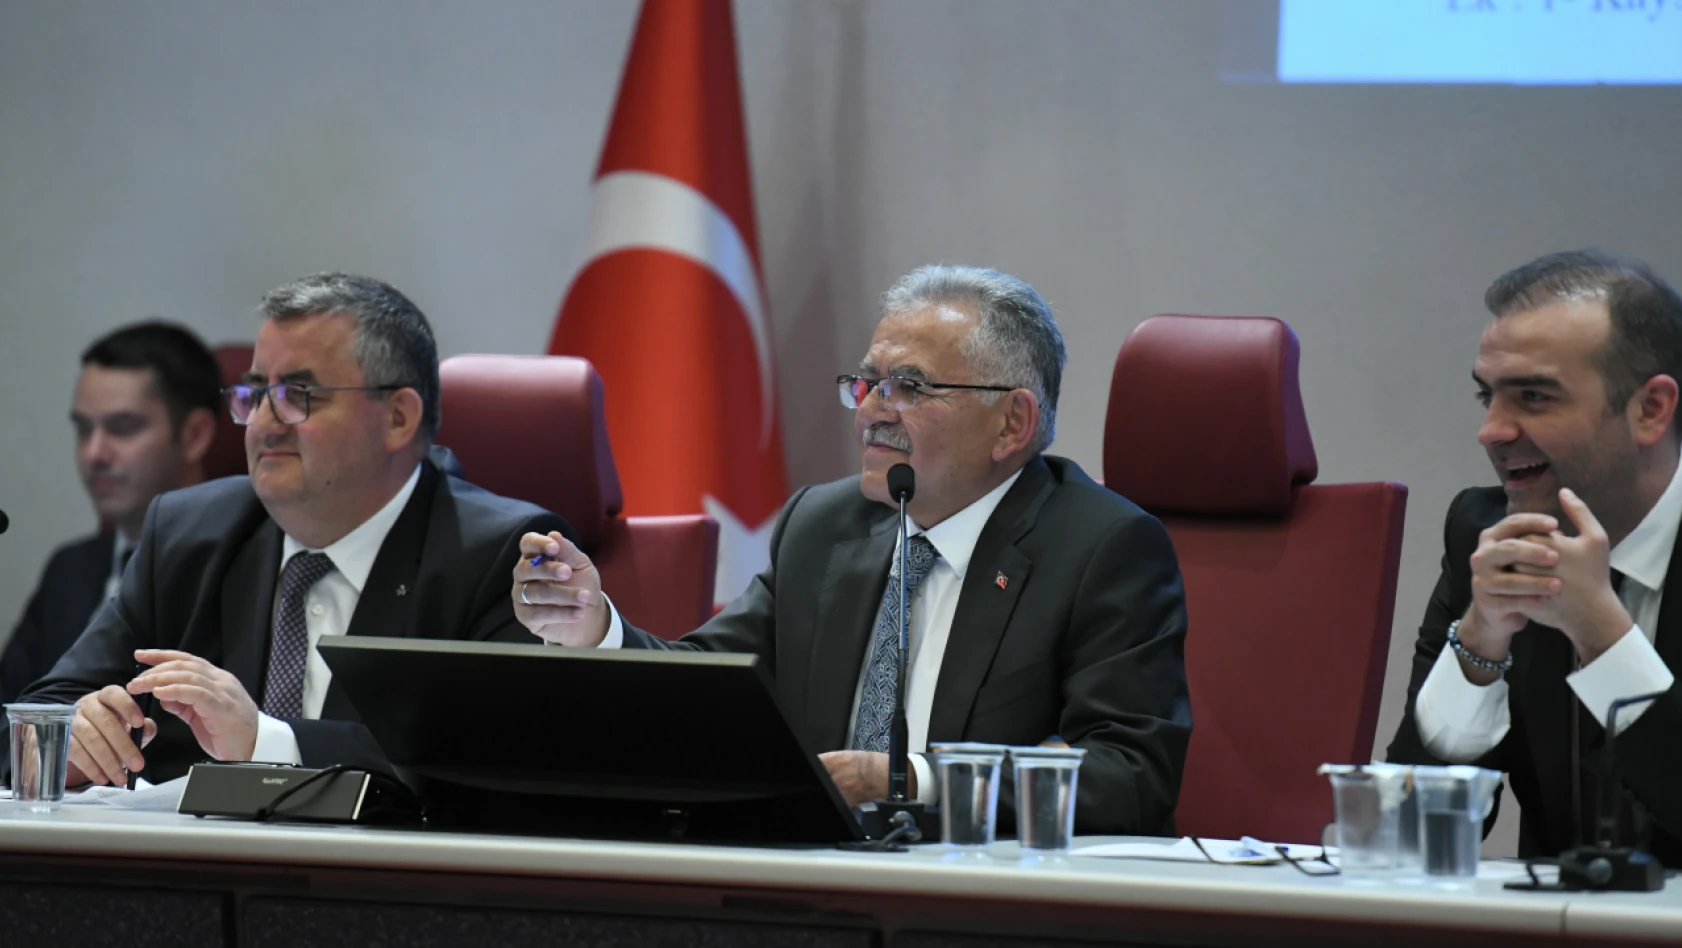 Büyükşehir Belediye Meclis'inde Yeni Komisyon Üyeleri Seçildi